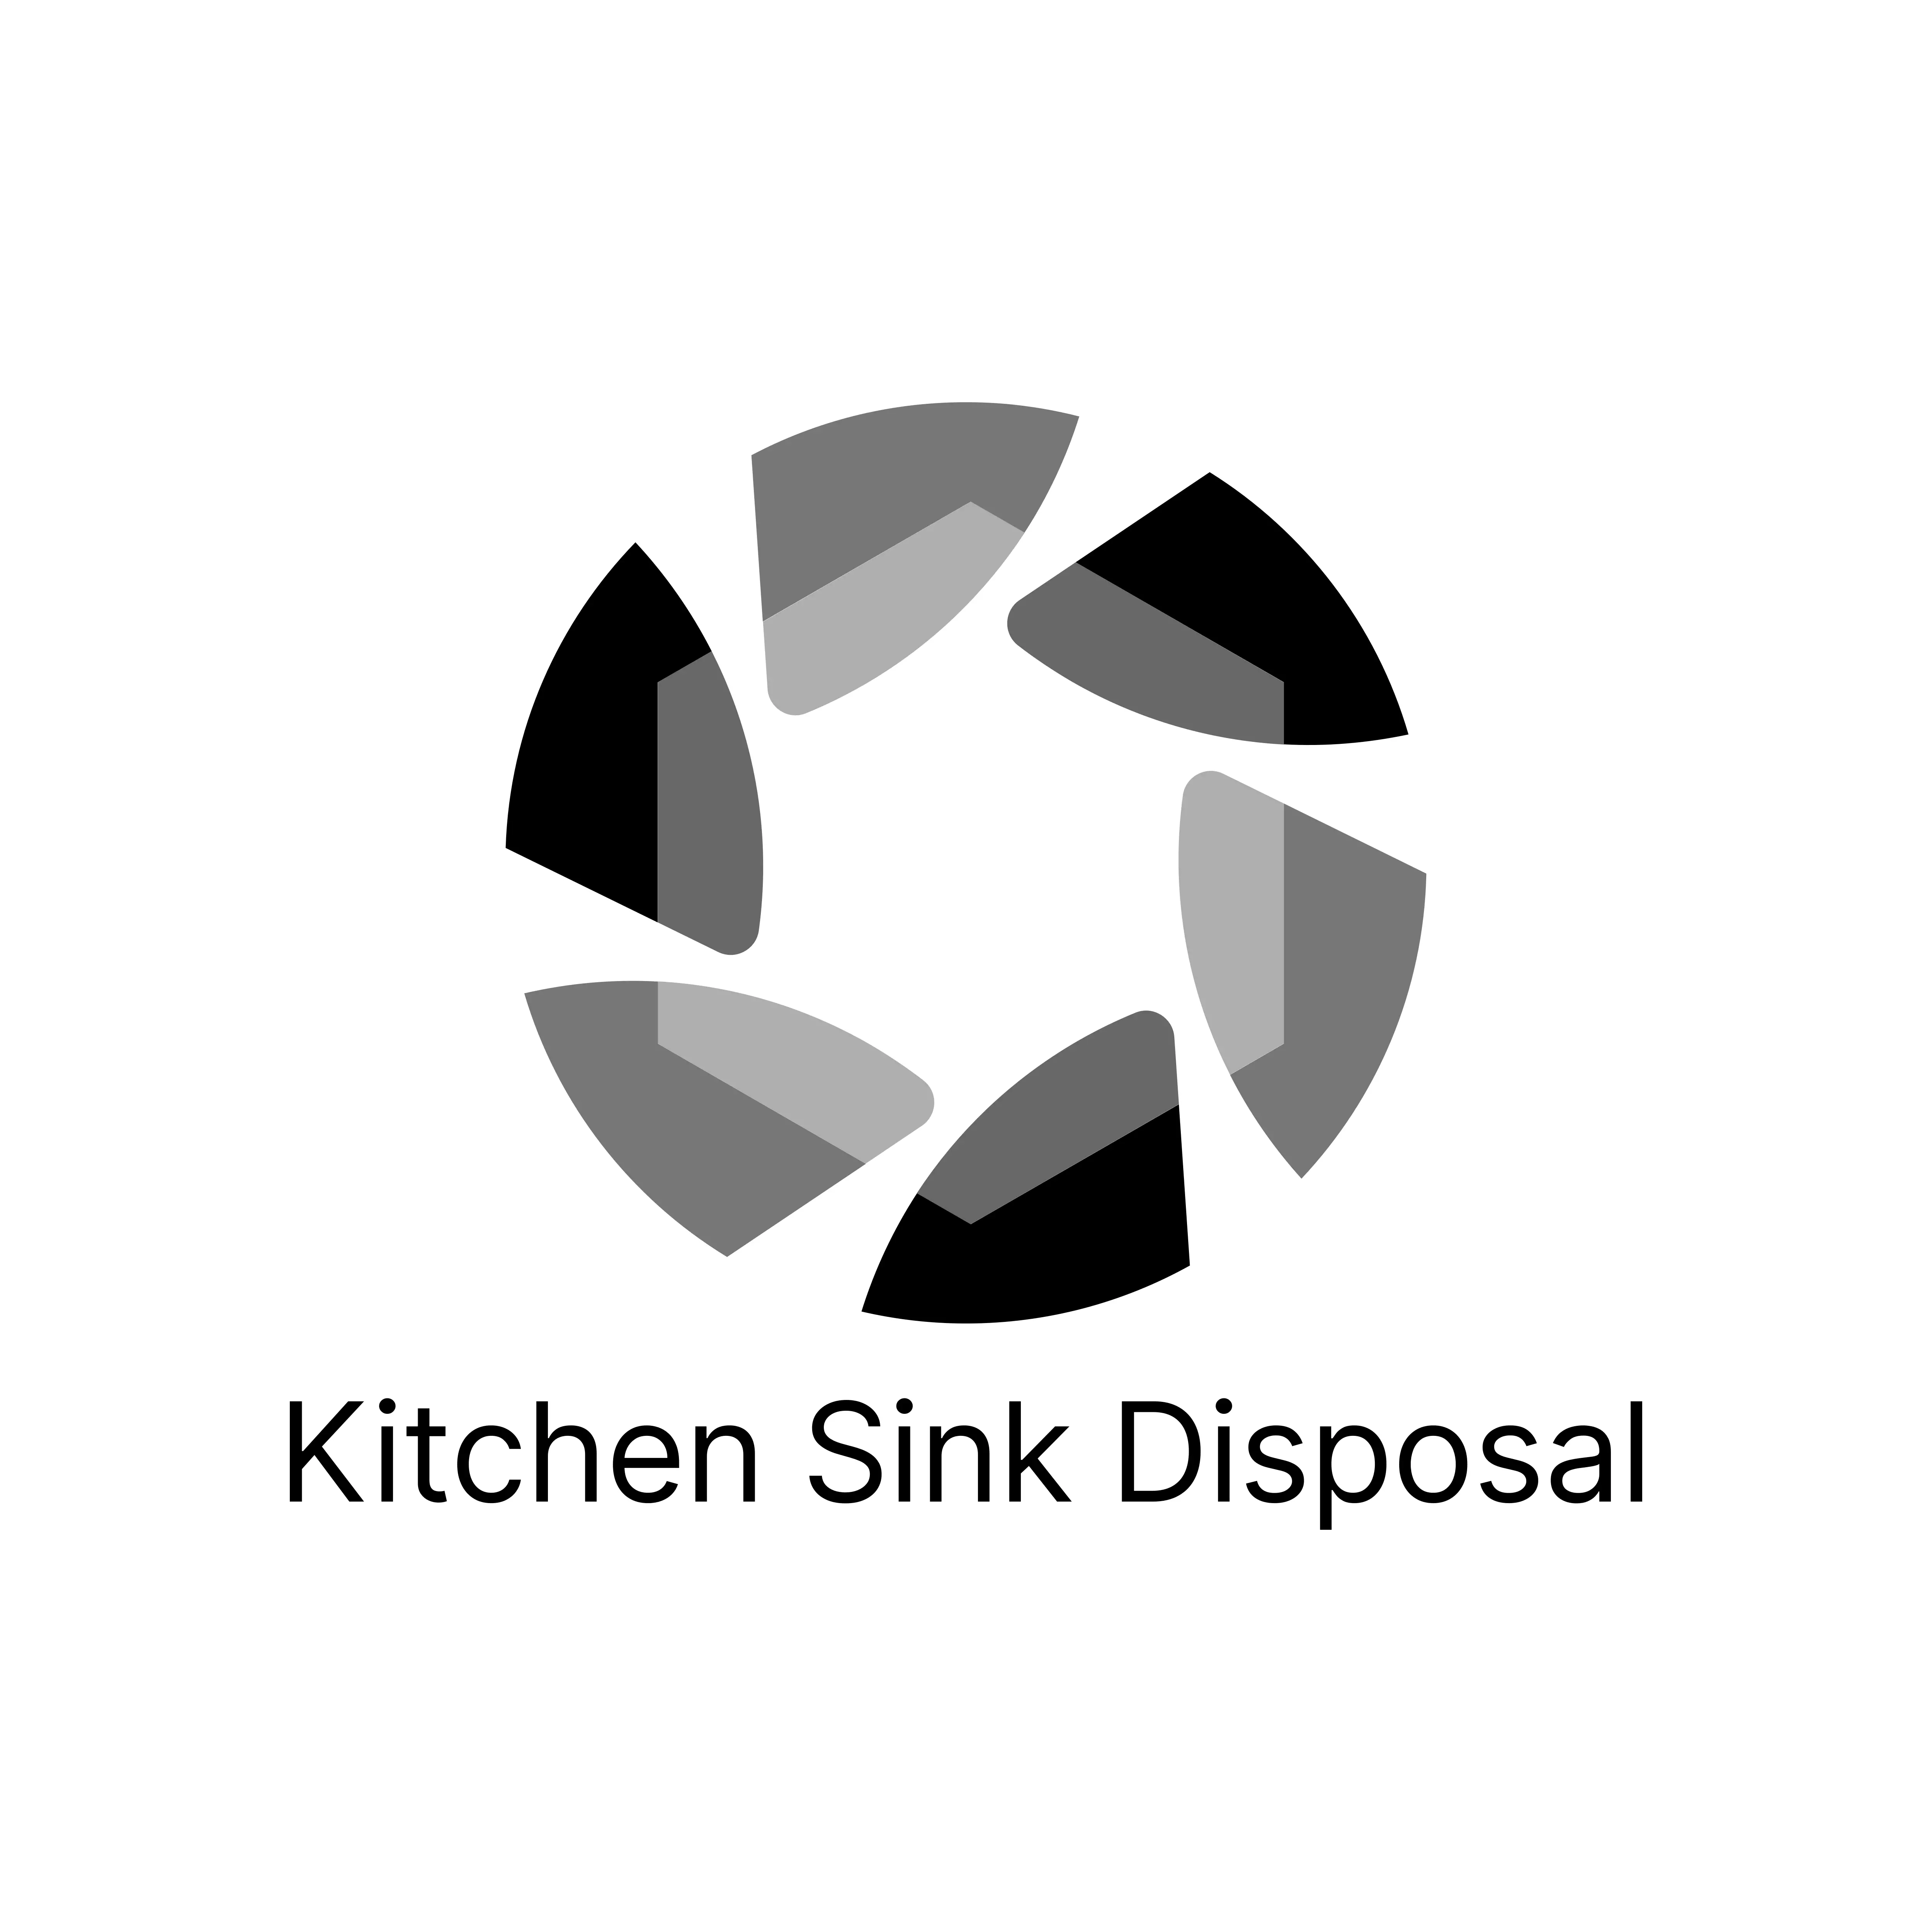 Kitchen Sink Disposal